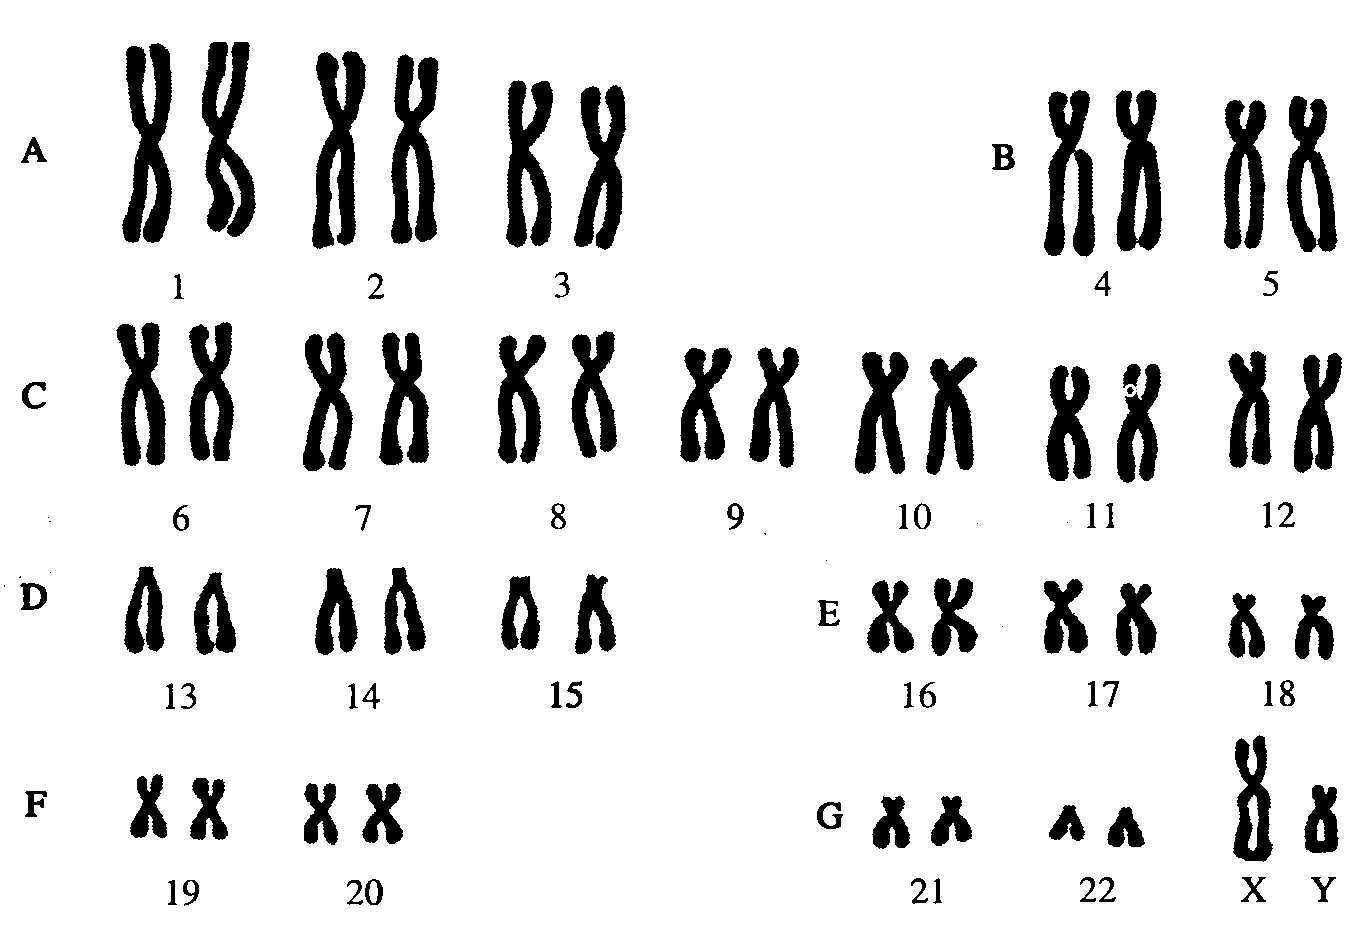 Кариотип человека определяют. Кариотип человека Денверская классификация хромосом. Кариотип человека классификация хромосом человека. Нормальный кариотип человека 46 хромосом. Кариограмма хромосом здорового человека.